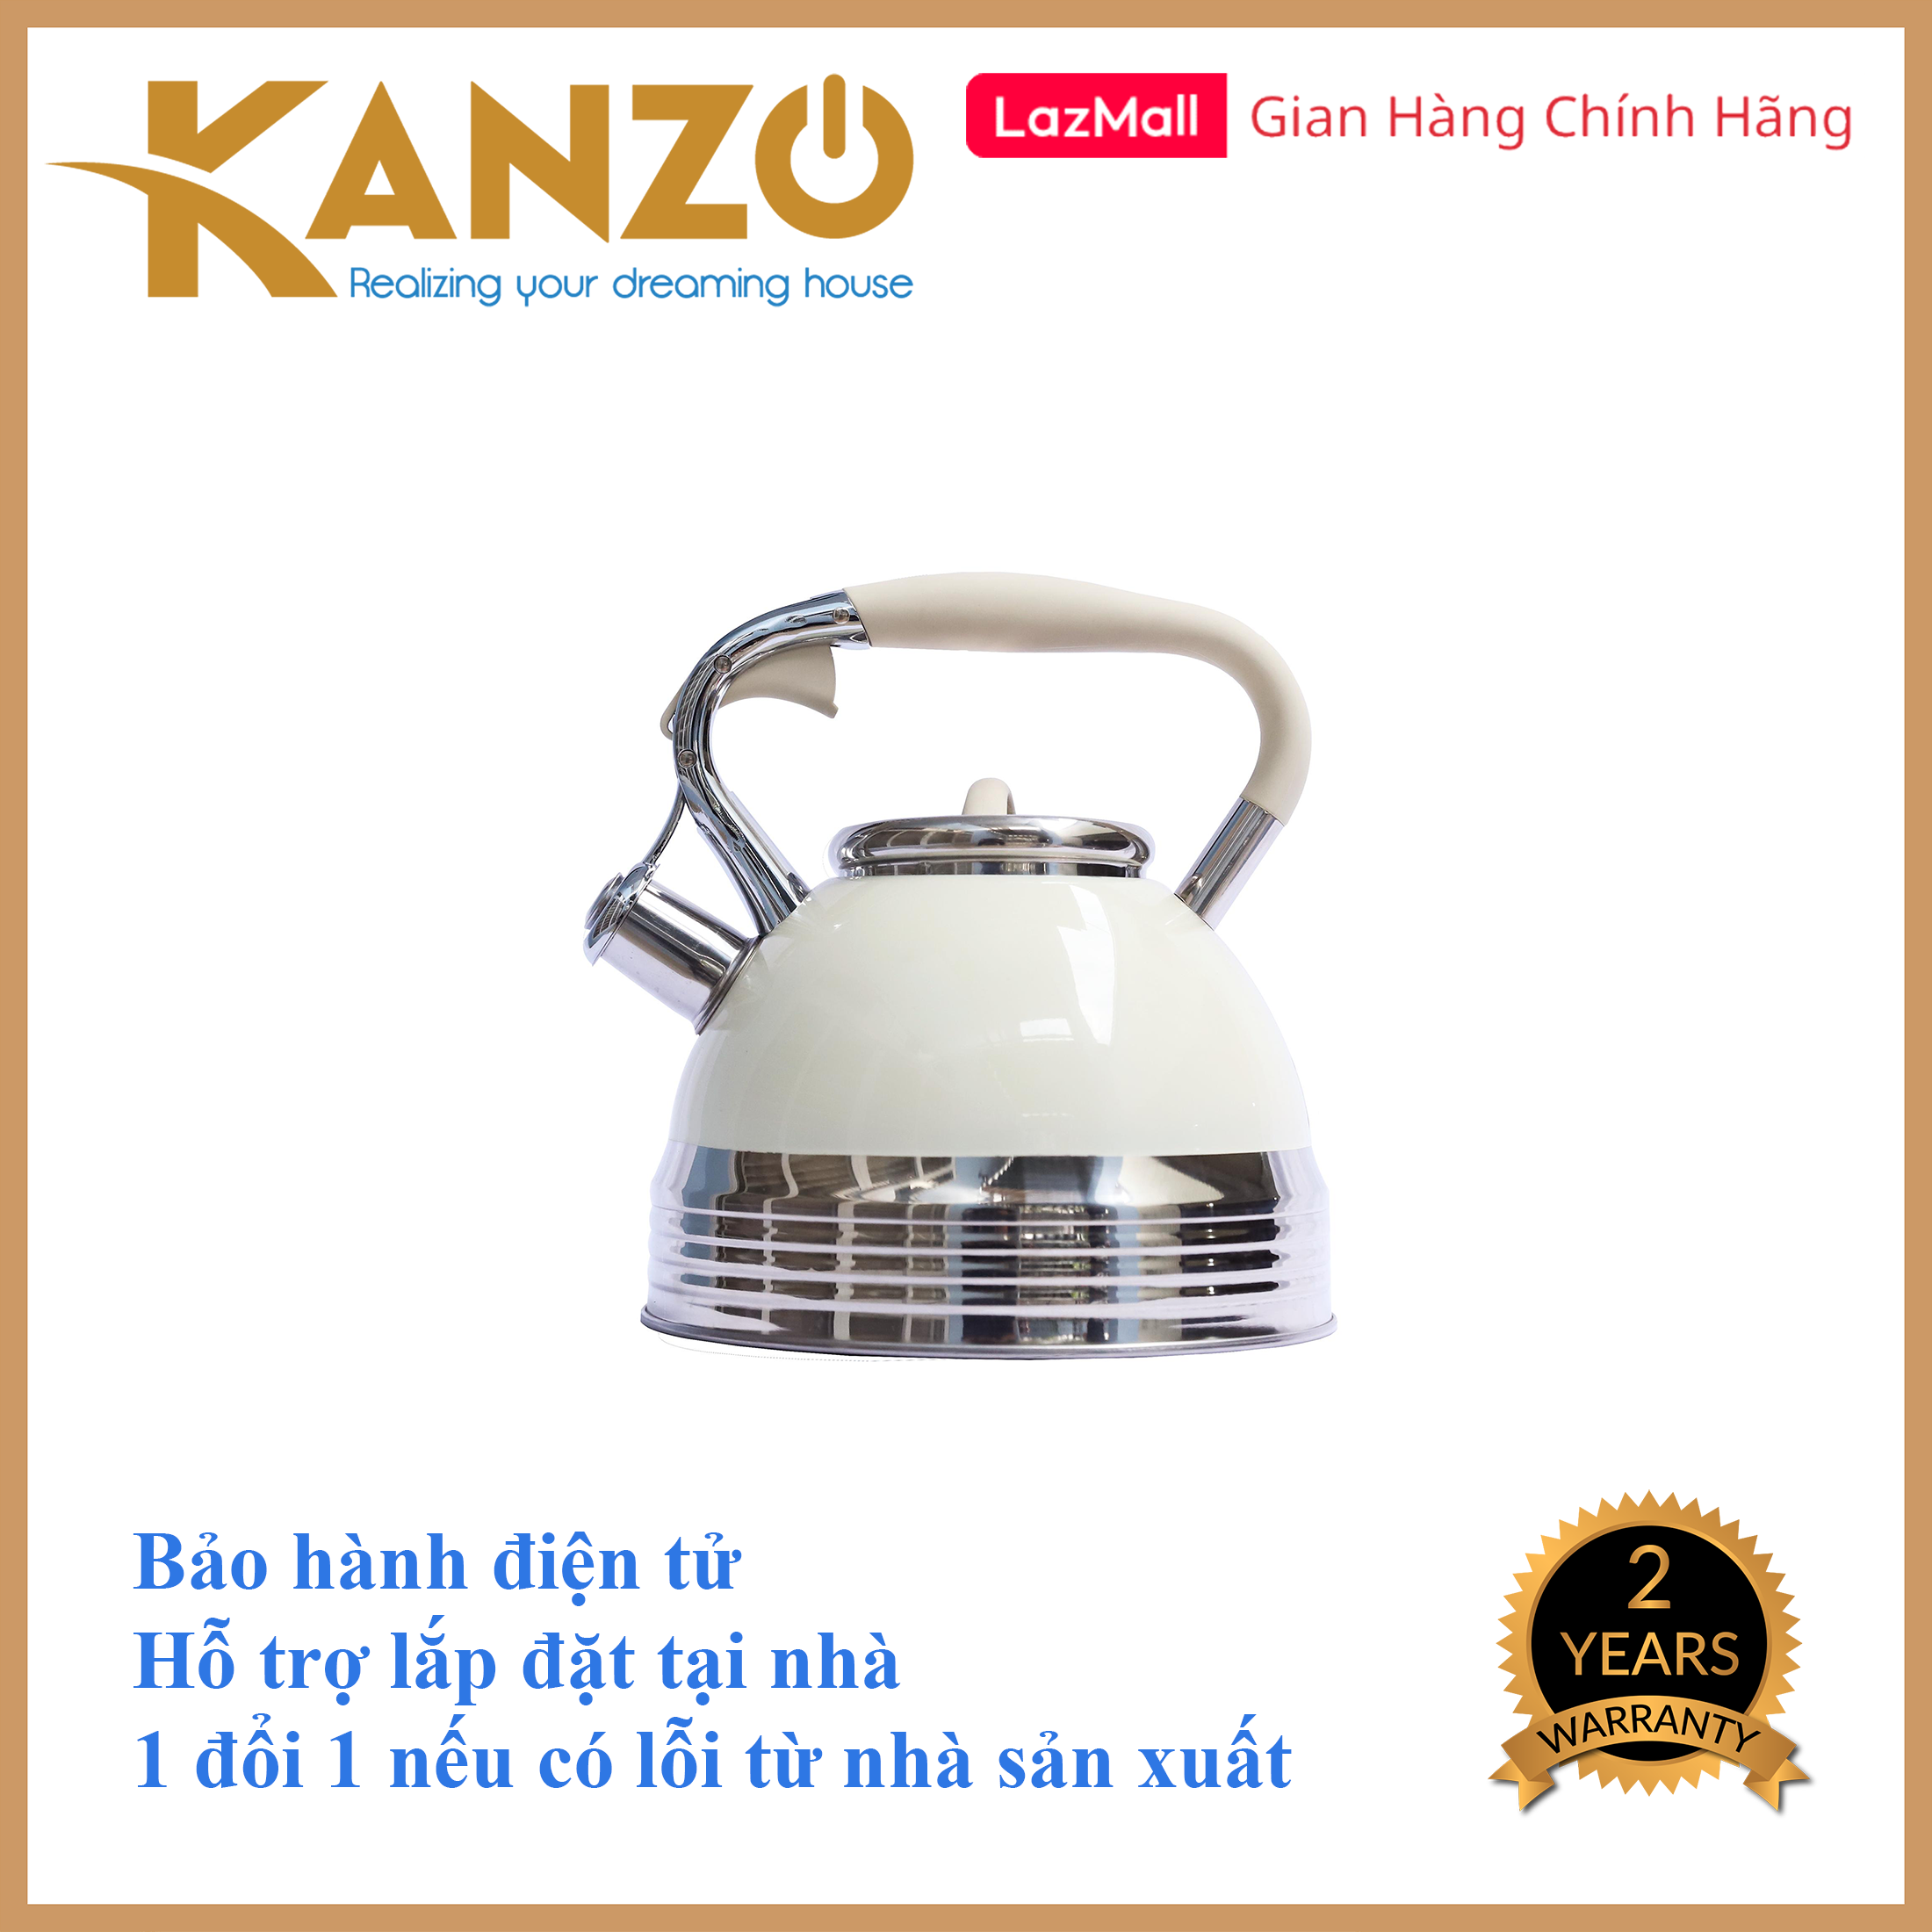 Ấm đun nước bếp từ Kanzo KZ-G68 còi báo [LUXURY] 3.0 L - Inox 304 - Phù hợp cho mọi loại bếp - Chất lượng Đức